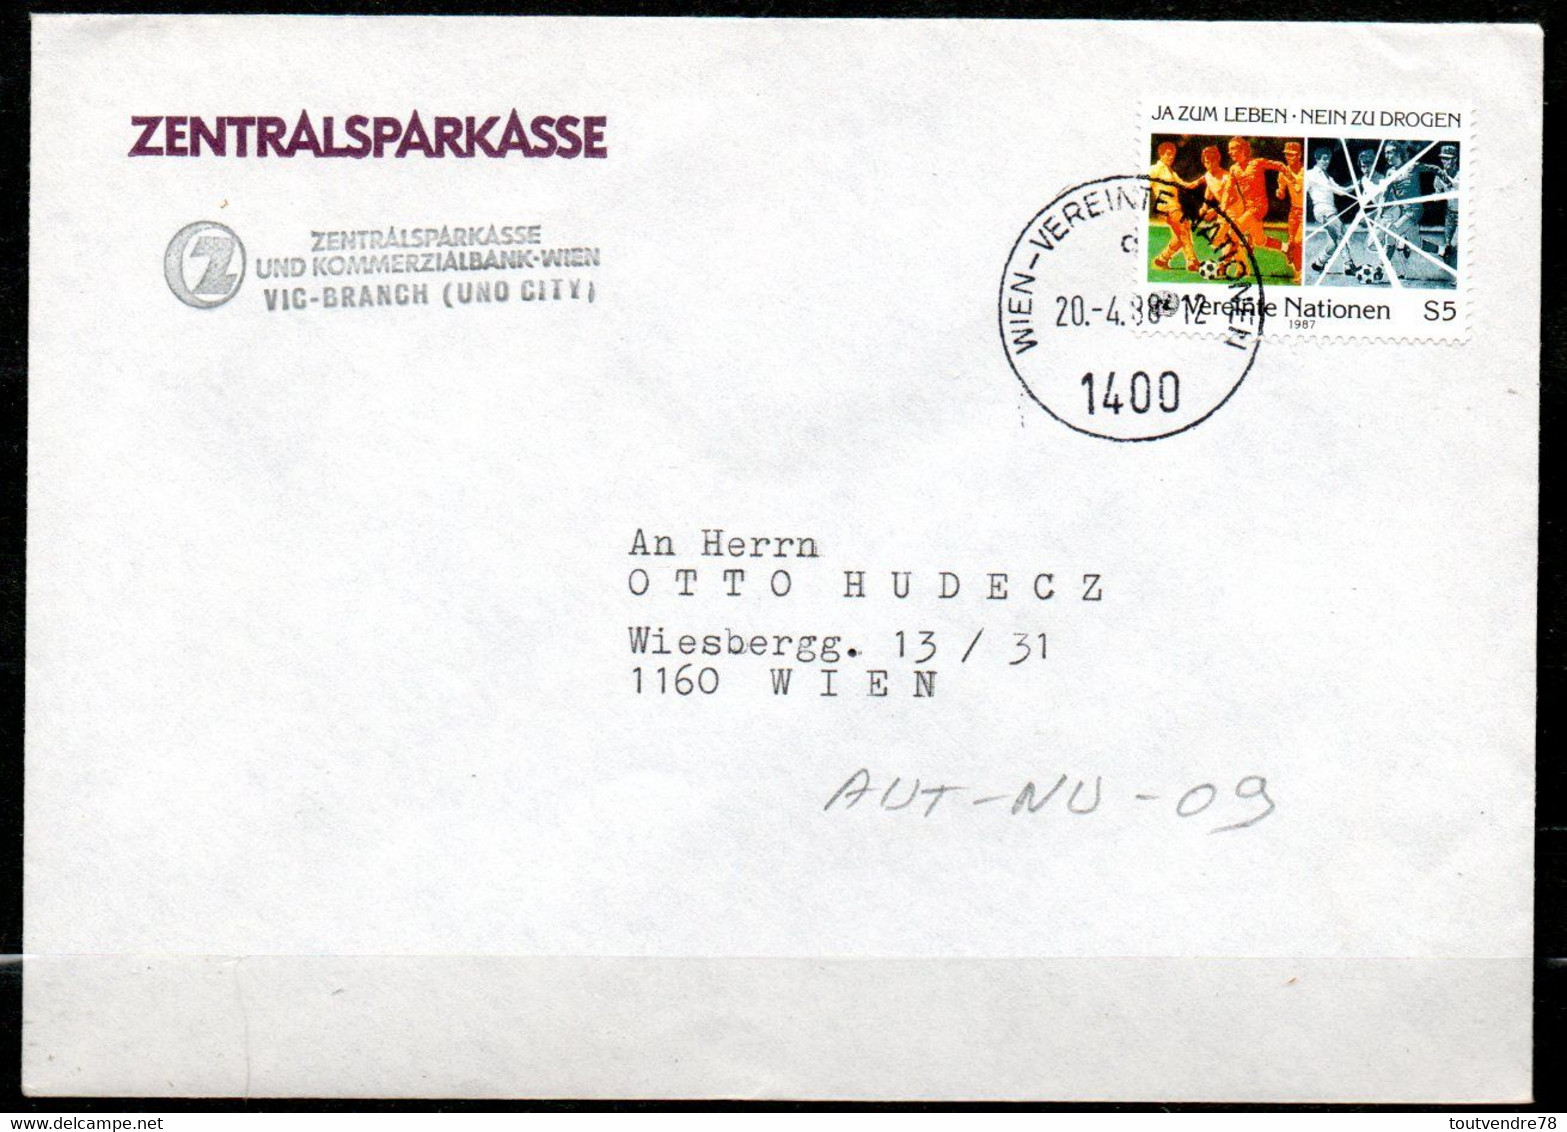 AUT-NU-09 : Autriche NU 1988 / Drogue Dans Le Sport / Banque Centrale D'épargne - Cartas & Documentos